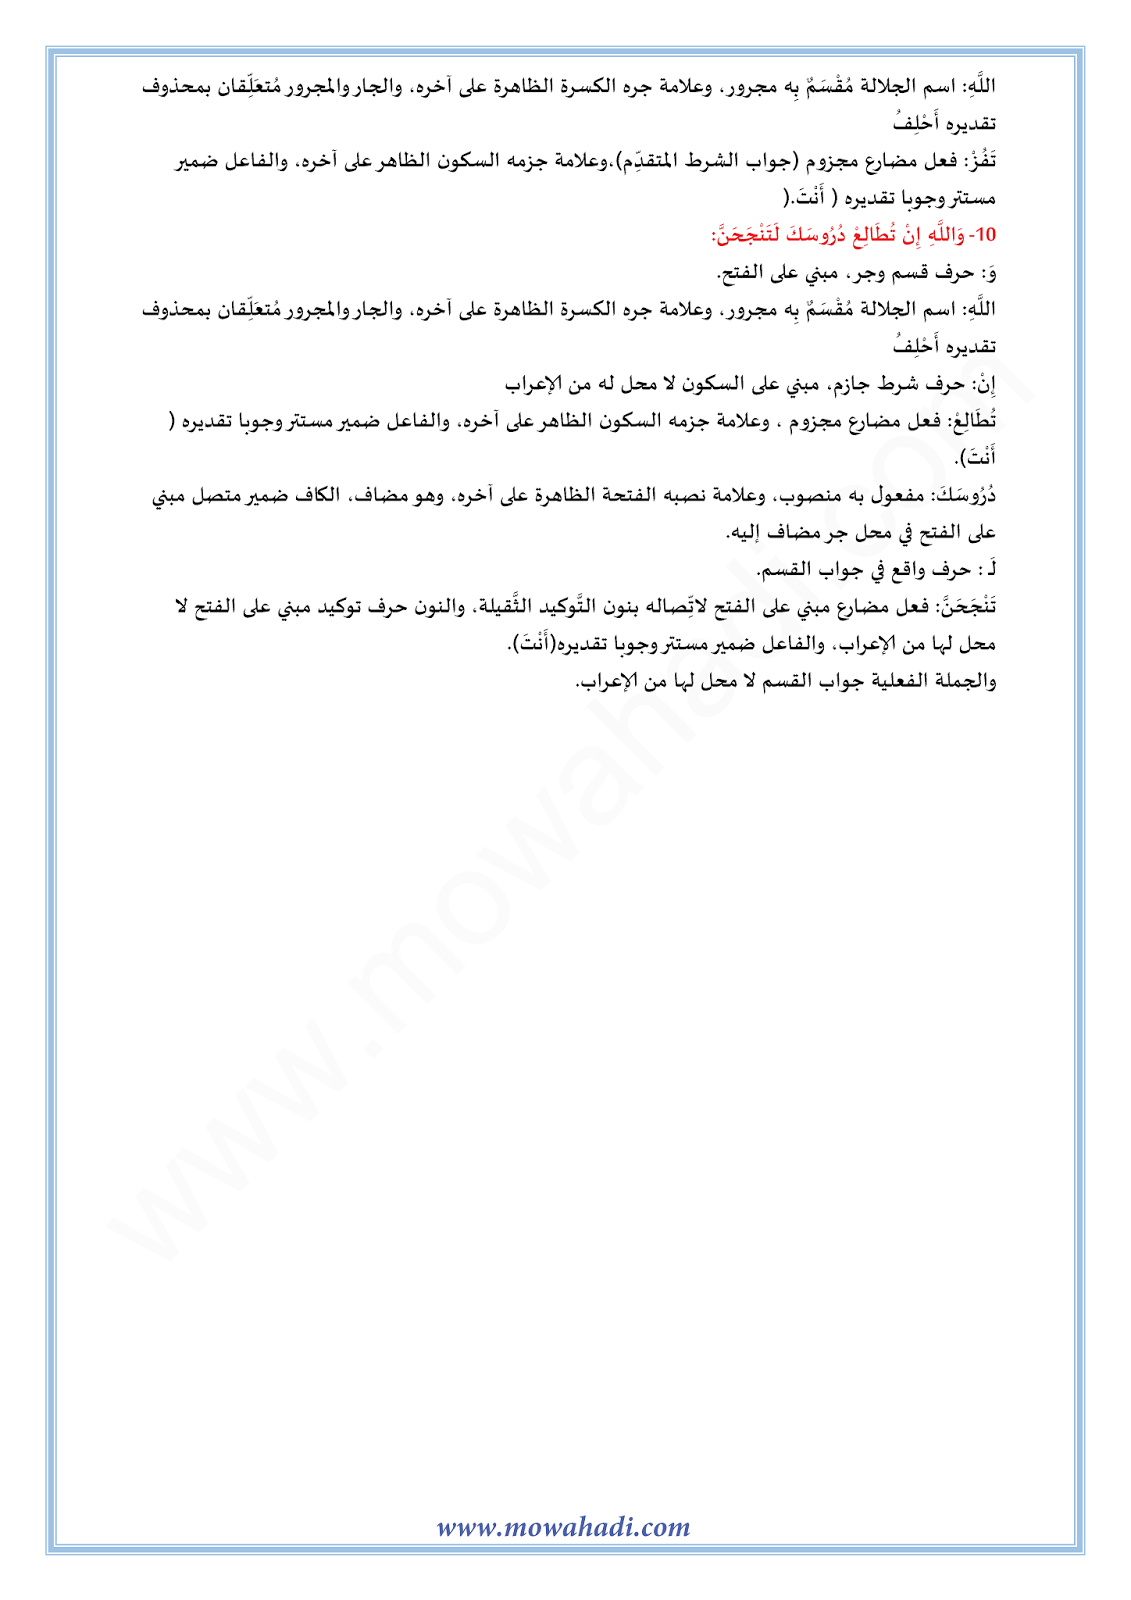 الدرس اللغوي اعراب الفعل المضارع : جزمه للسنة الأولى اعدادي في مادة اللغة العربية 11-cours-dars-loghawi1_005